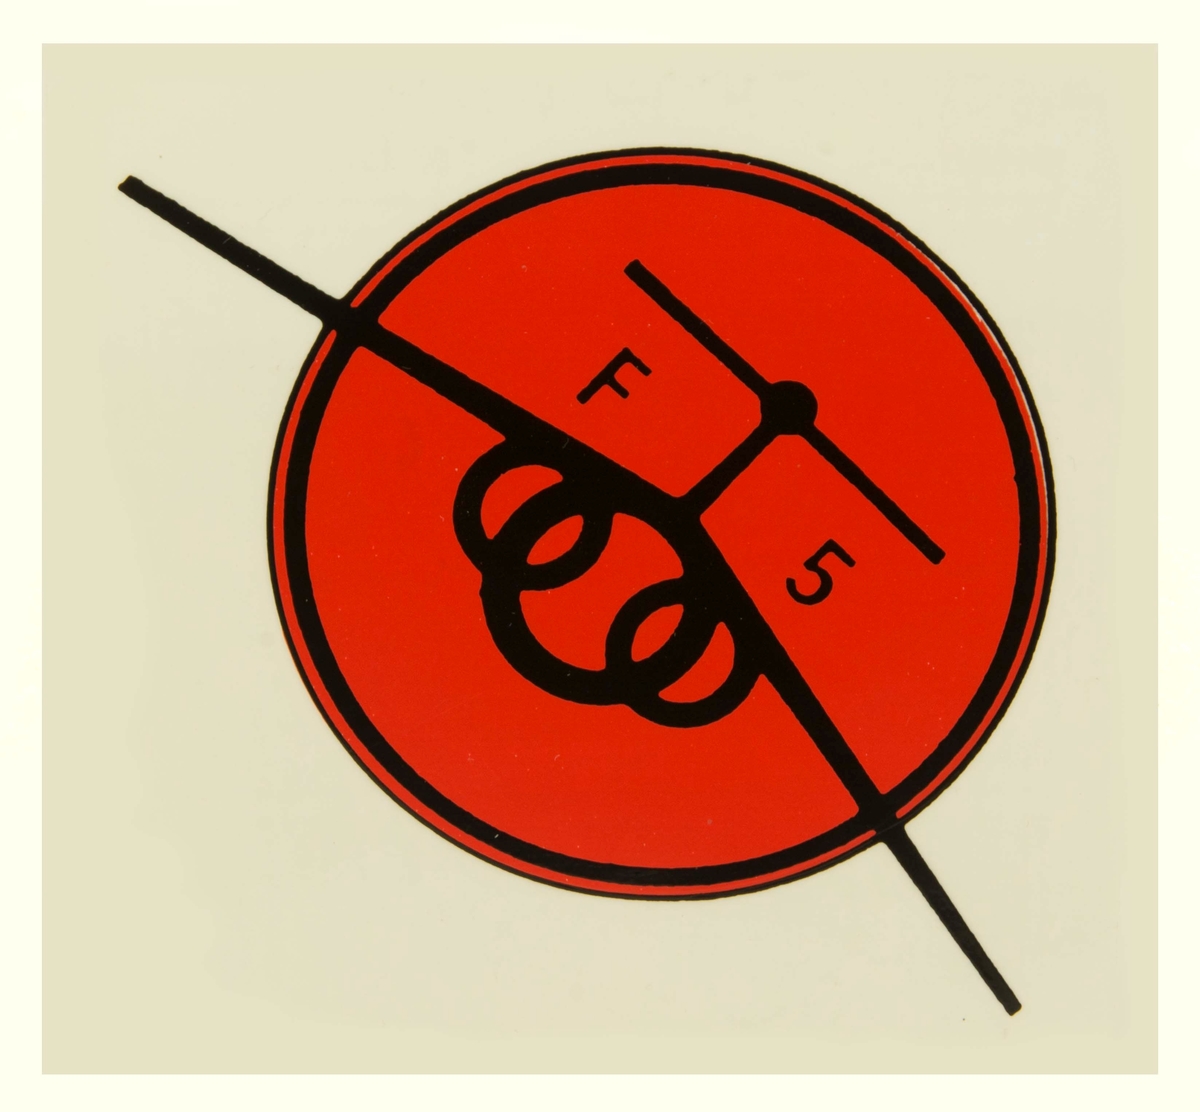 Två dekalar 1 div F5, flygförarmärke. 1) Rött E på blå bakgrund, korsade svärd som krönts av tre kronor. 
2) Röd cirkel med svart ram, F5 i svart text.